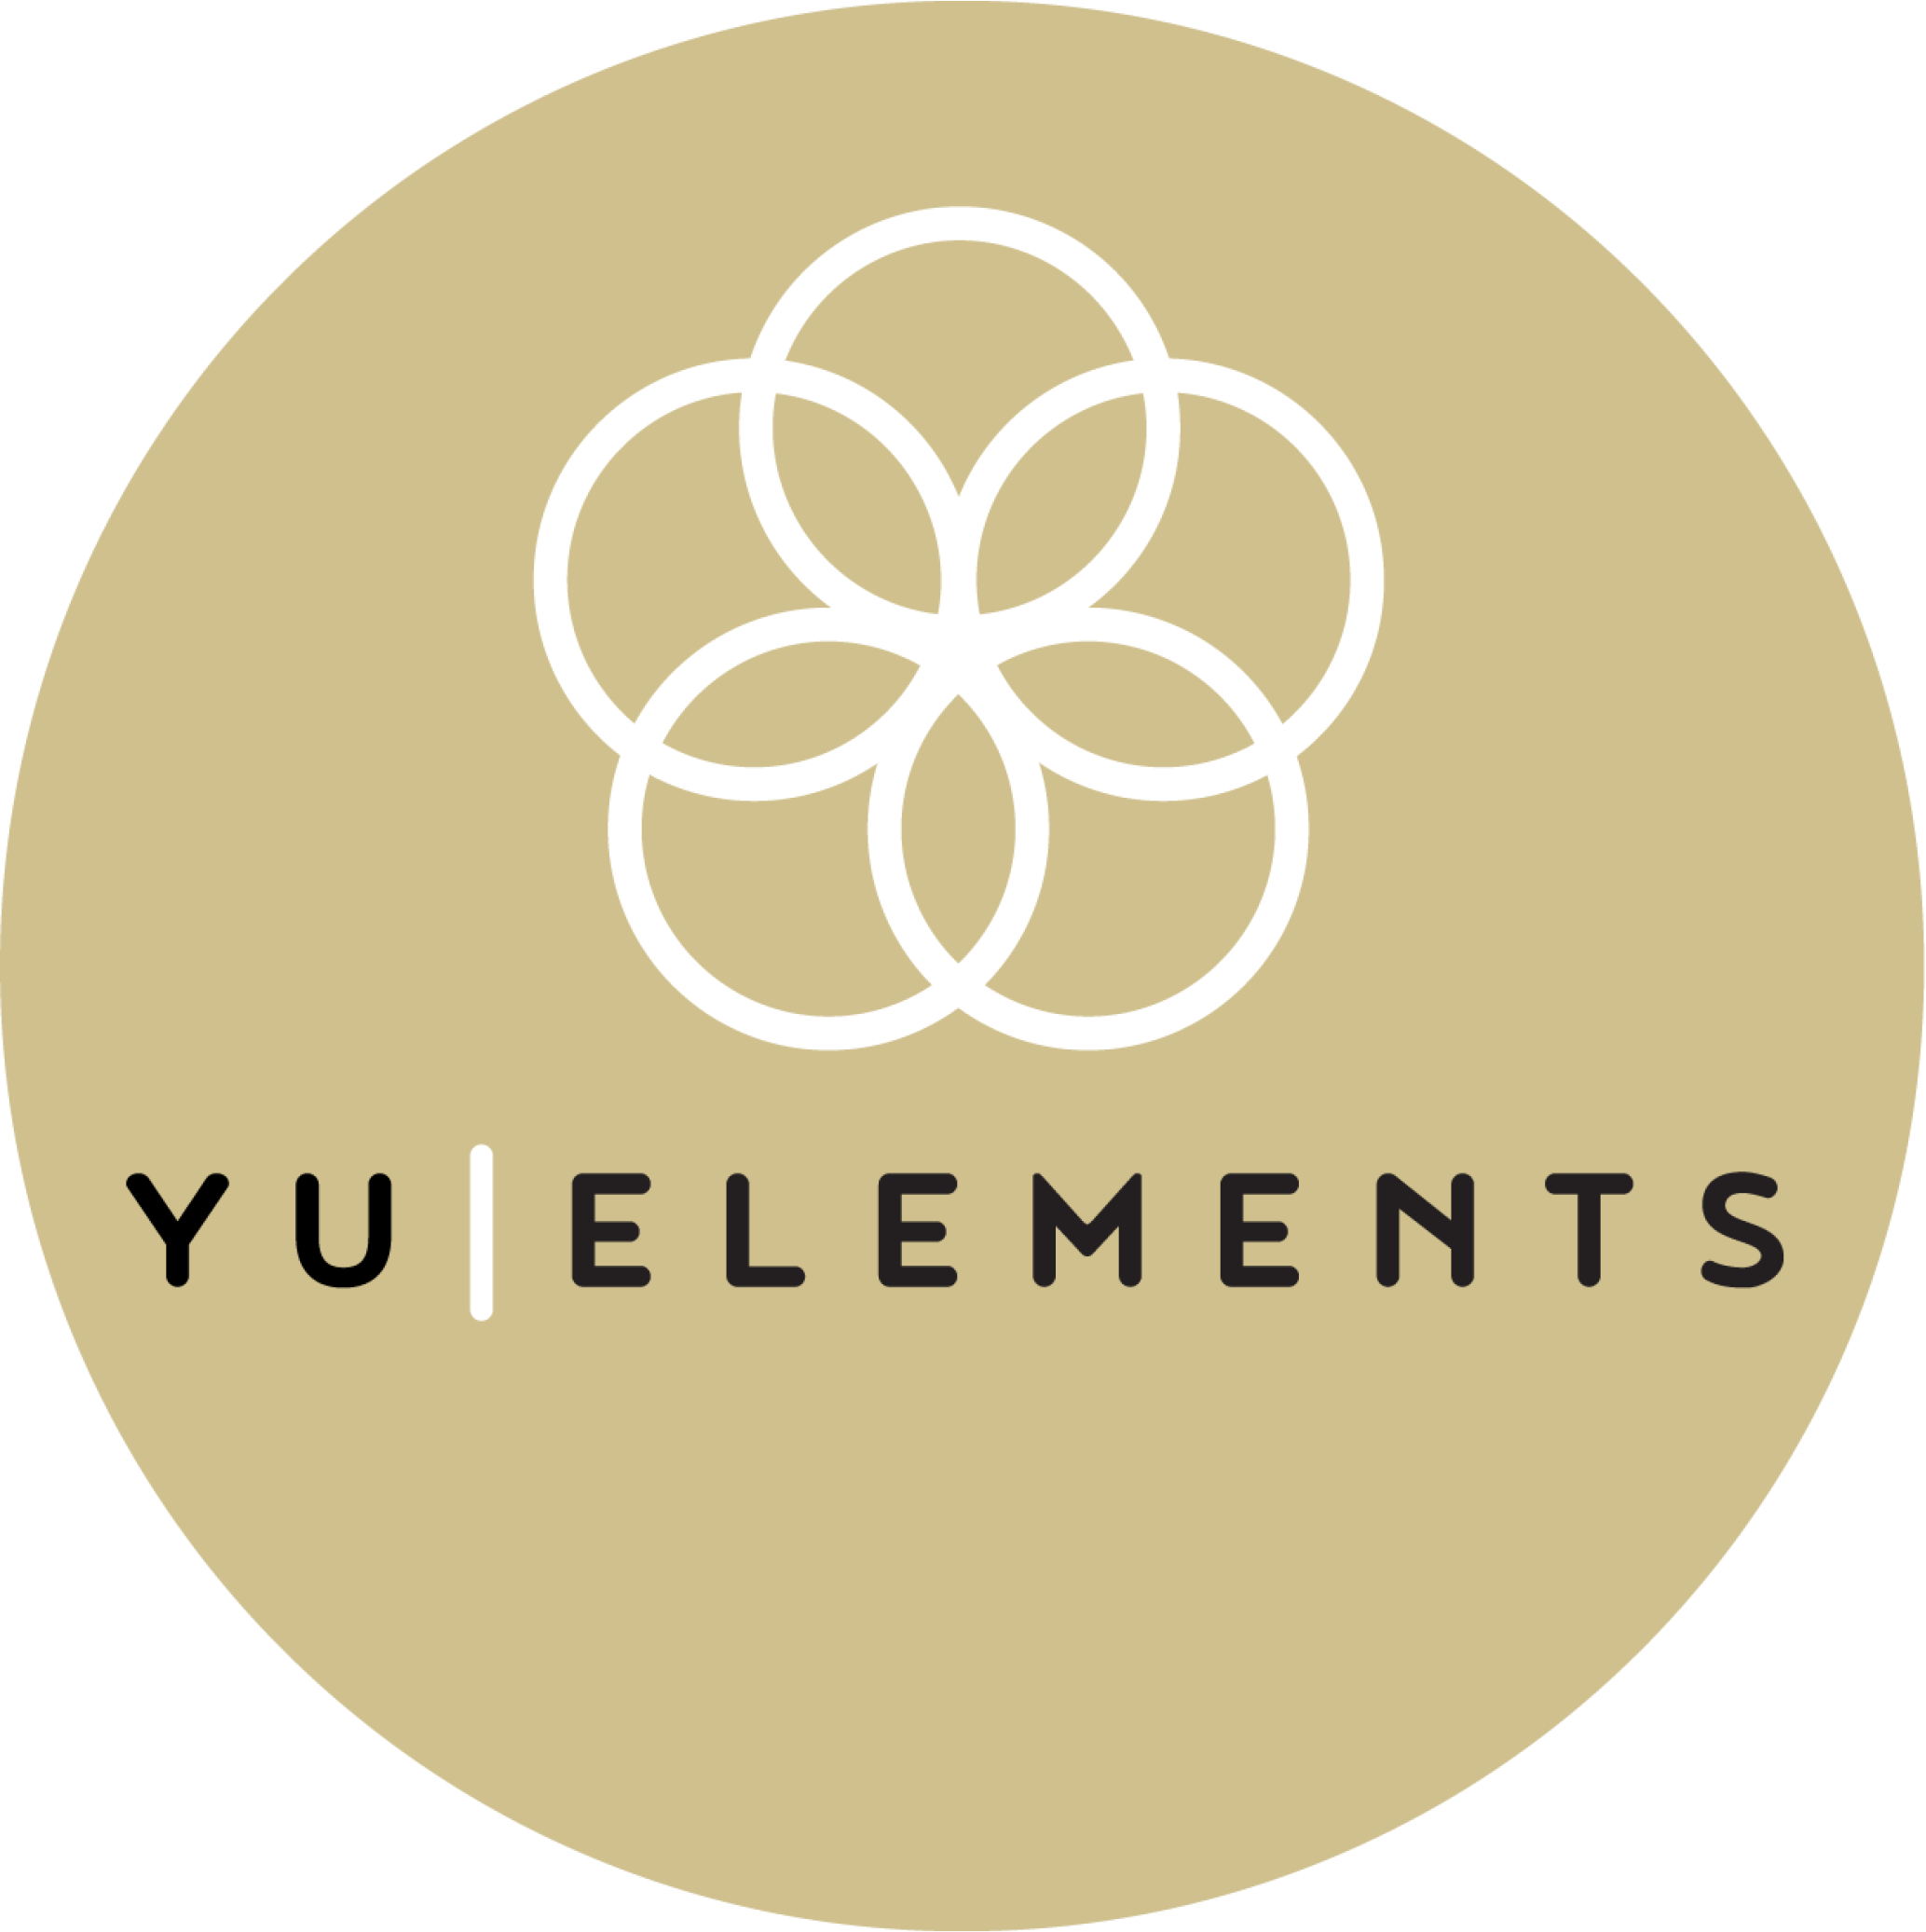 YU elements